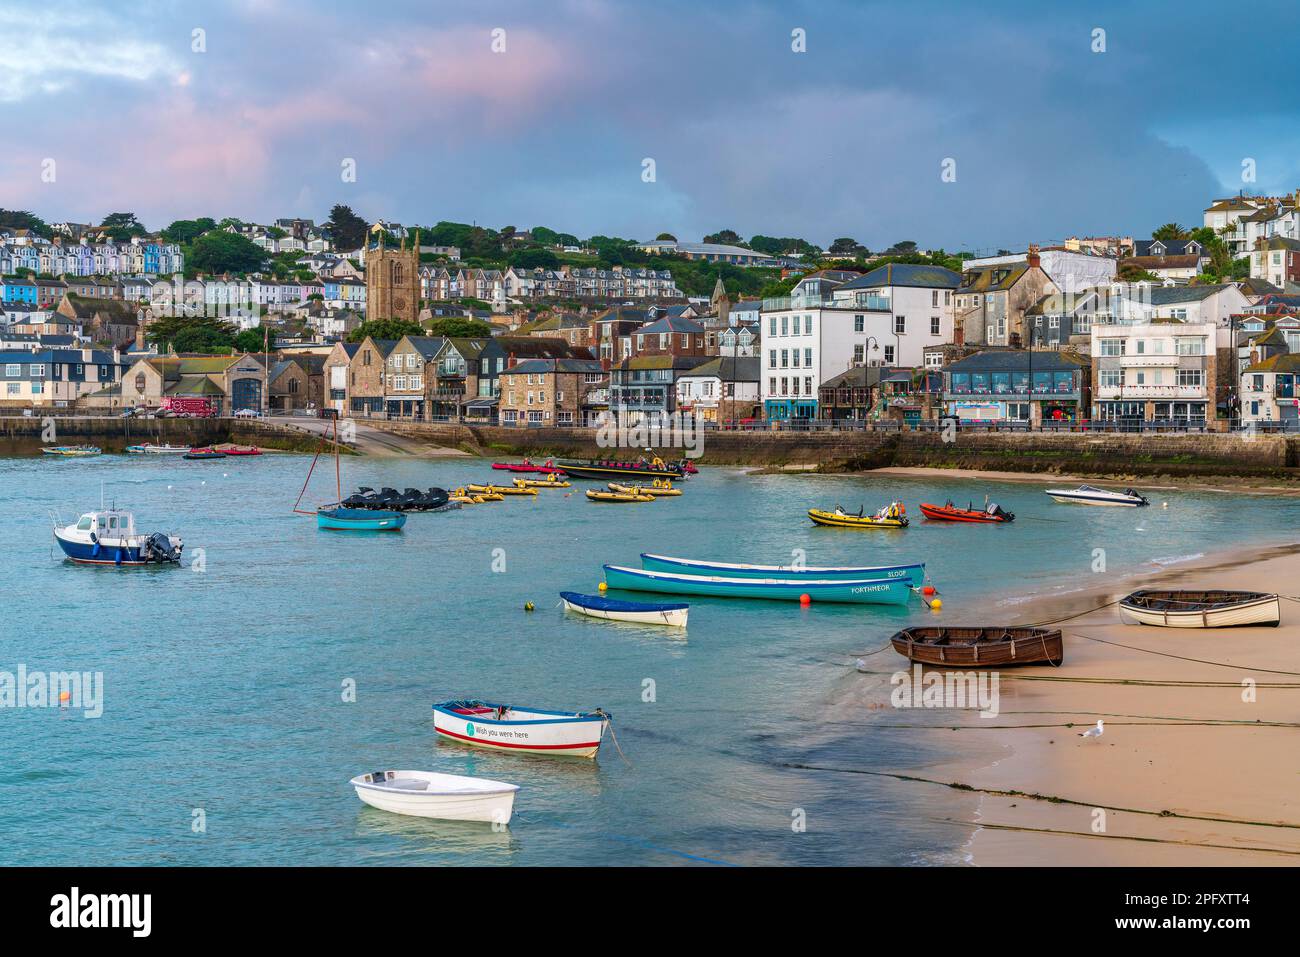 St Ives, Cornwall, England, United Kingdom, Europe Stock Photo